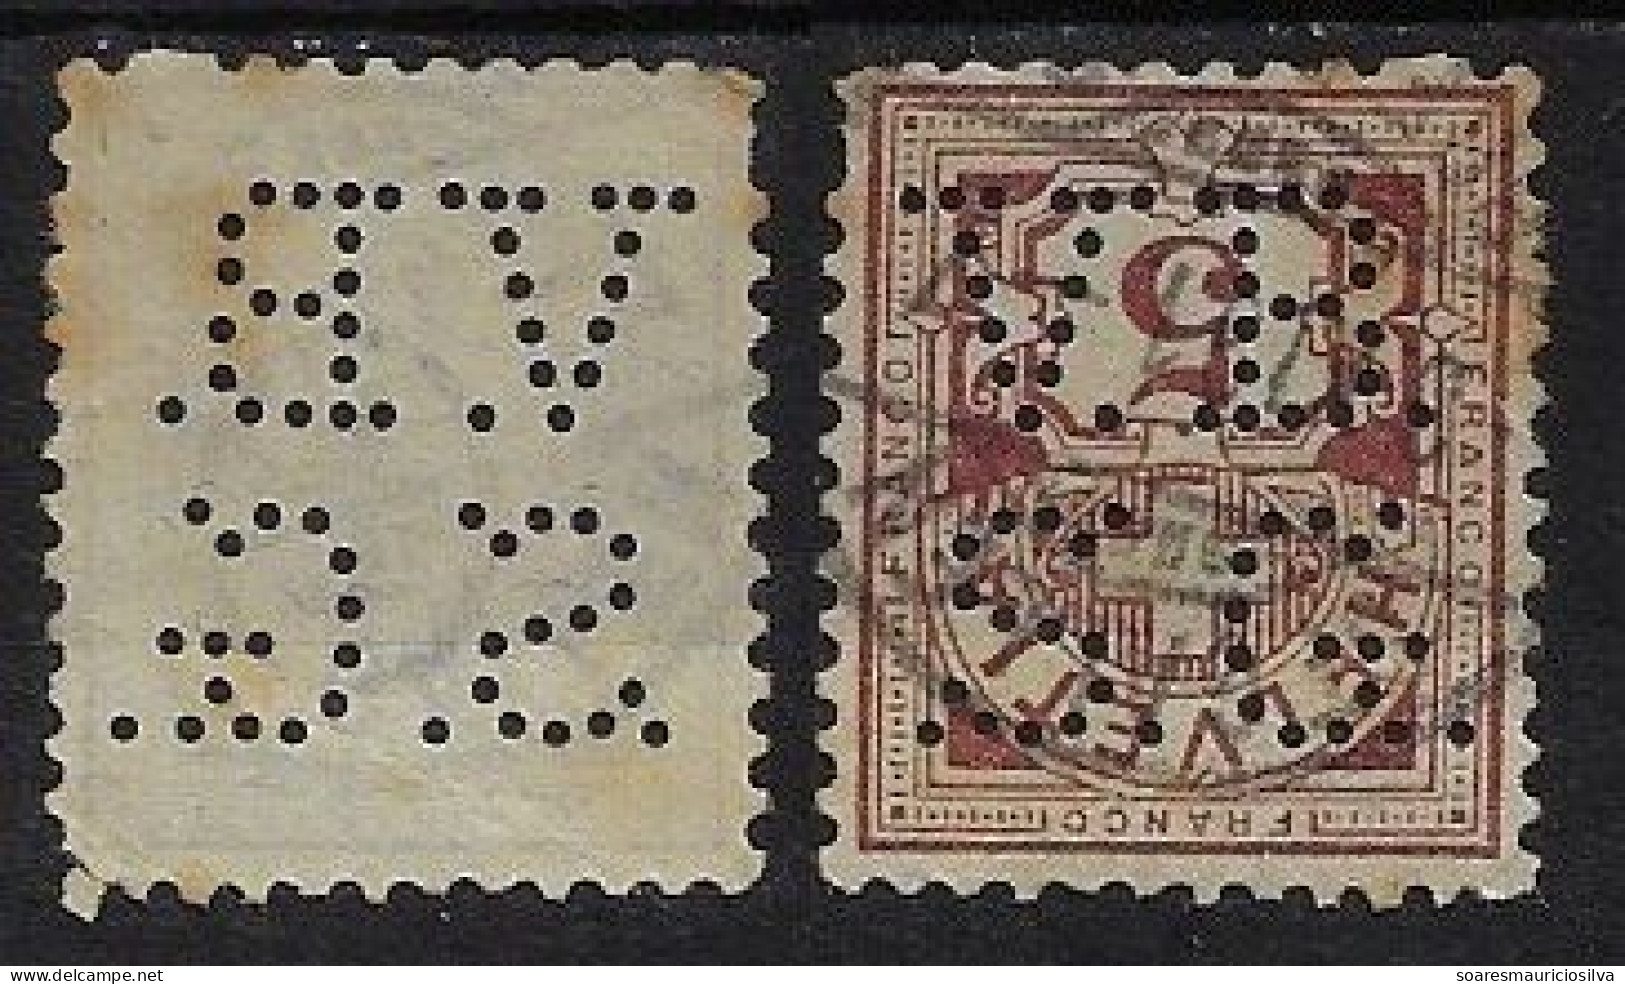 Switzerland 1890/1917 Stamp Perfin V.B./S.G. By Schweizerische Volksbank Swiss People's Bank St. Gallenn Lochung Perfore - Perfin